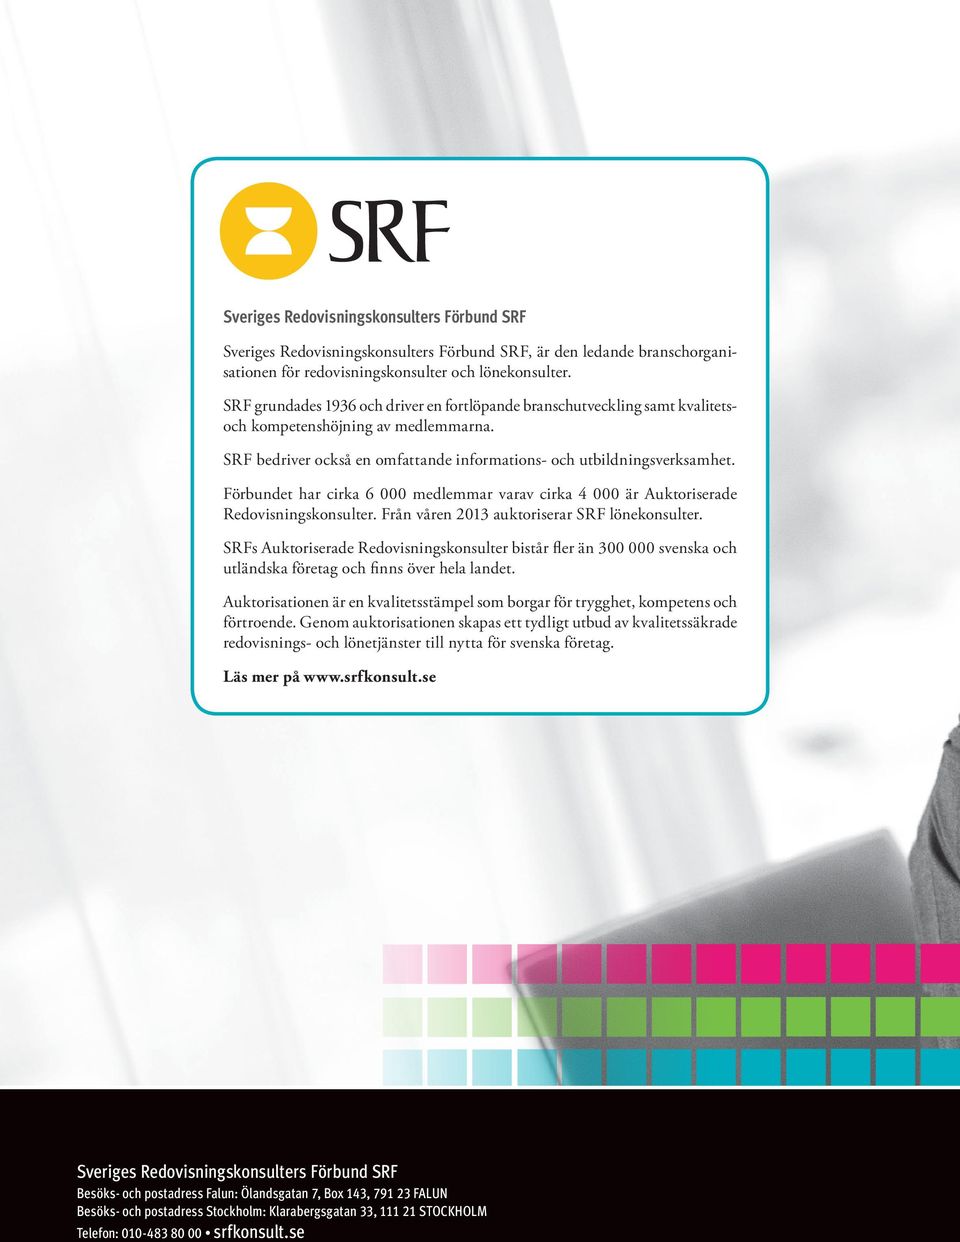 Förbundet har cirka 6 000 medlemmar varav cirka 4 000 är Auktoriserade Redovisningskonsulter. Från våren 2013 auktoriserar SRF lönekonsulter.